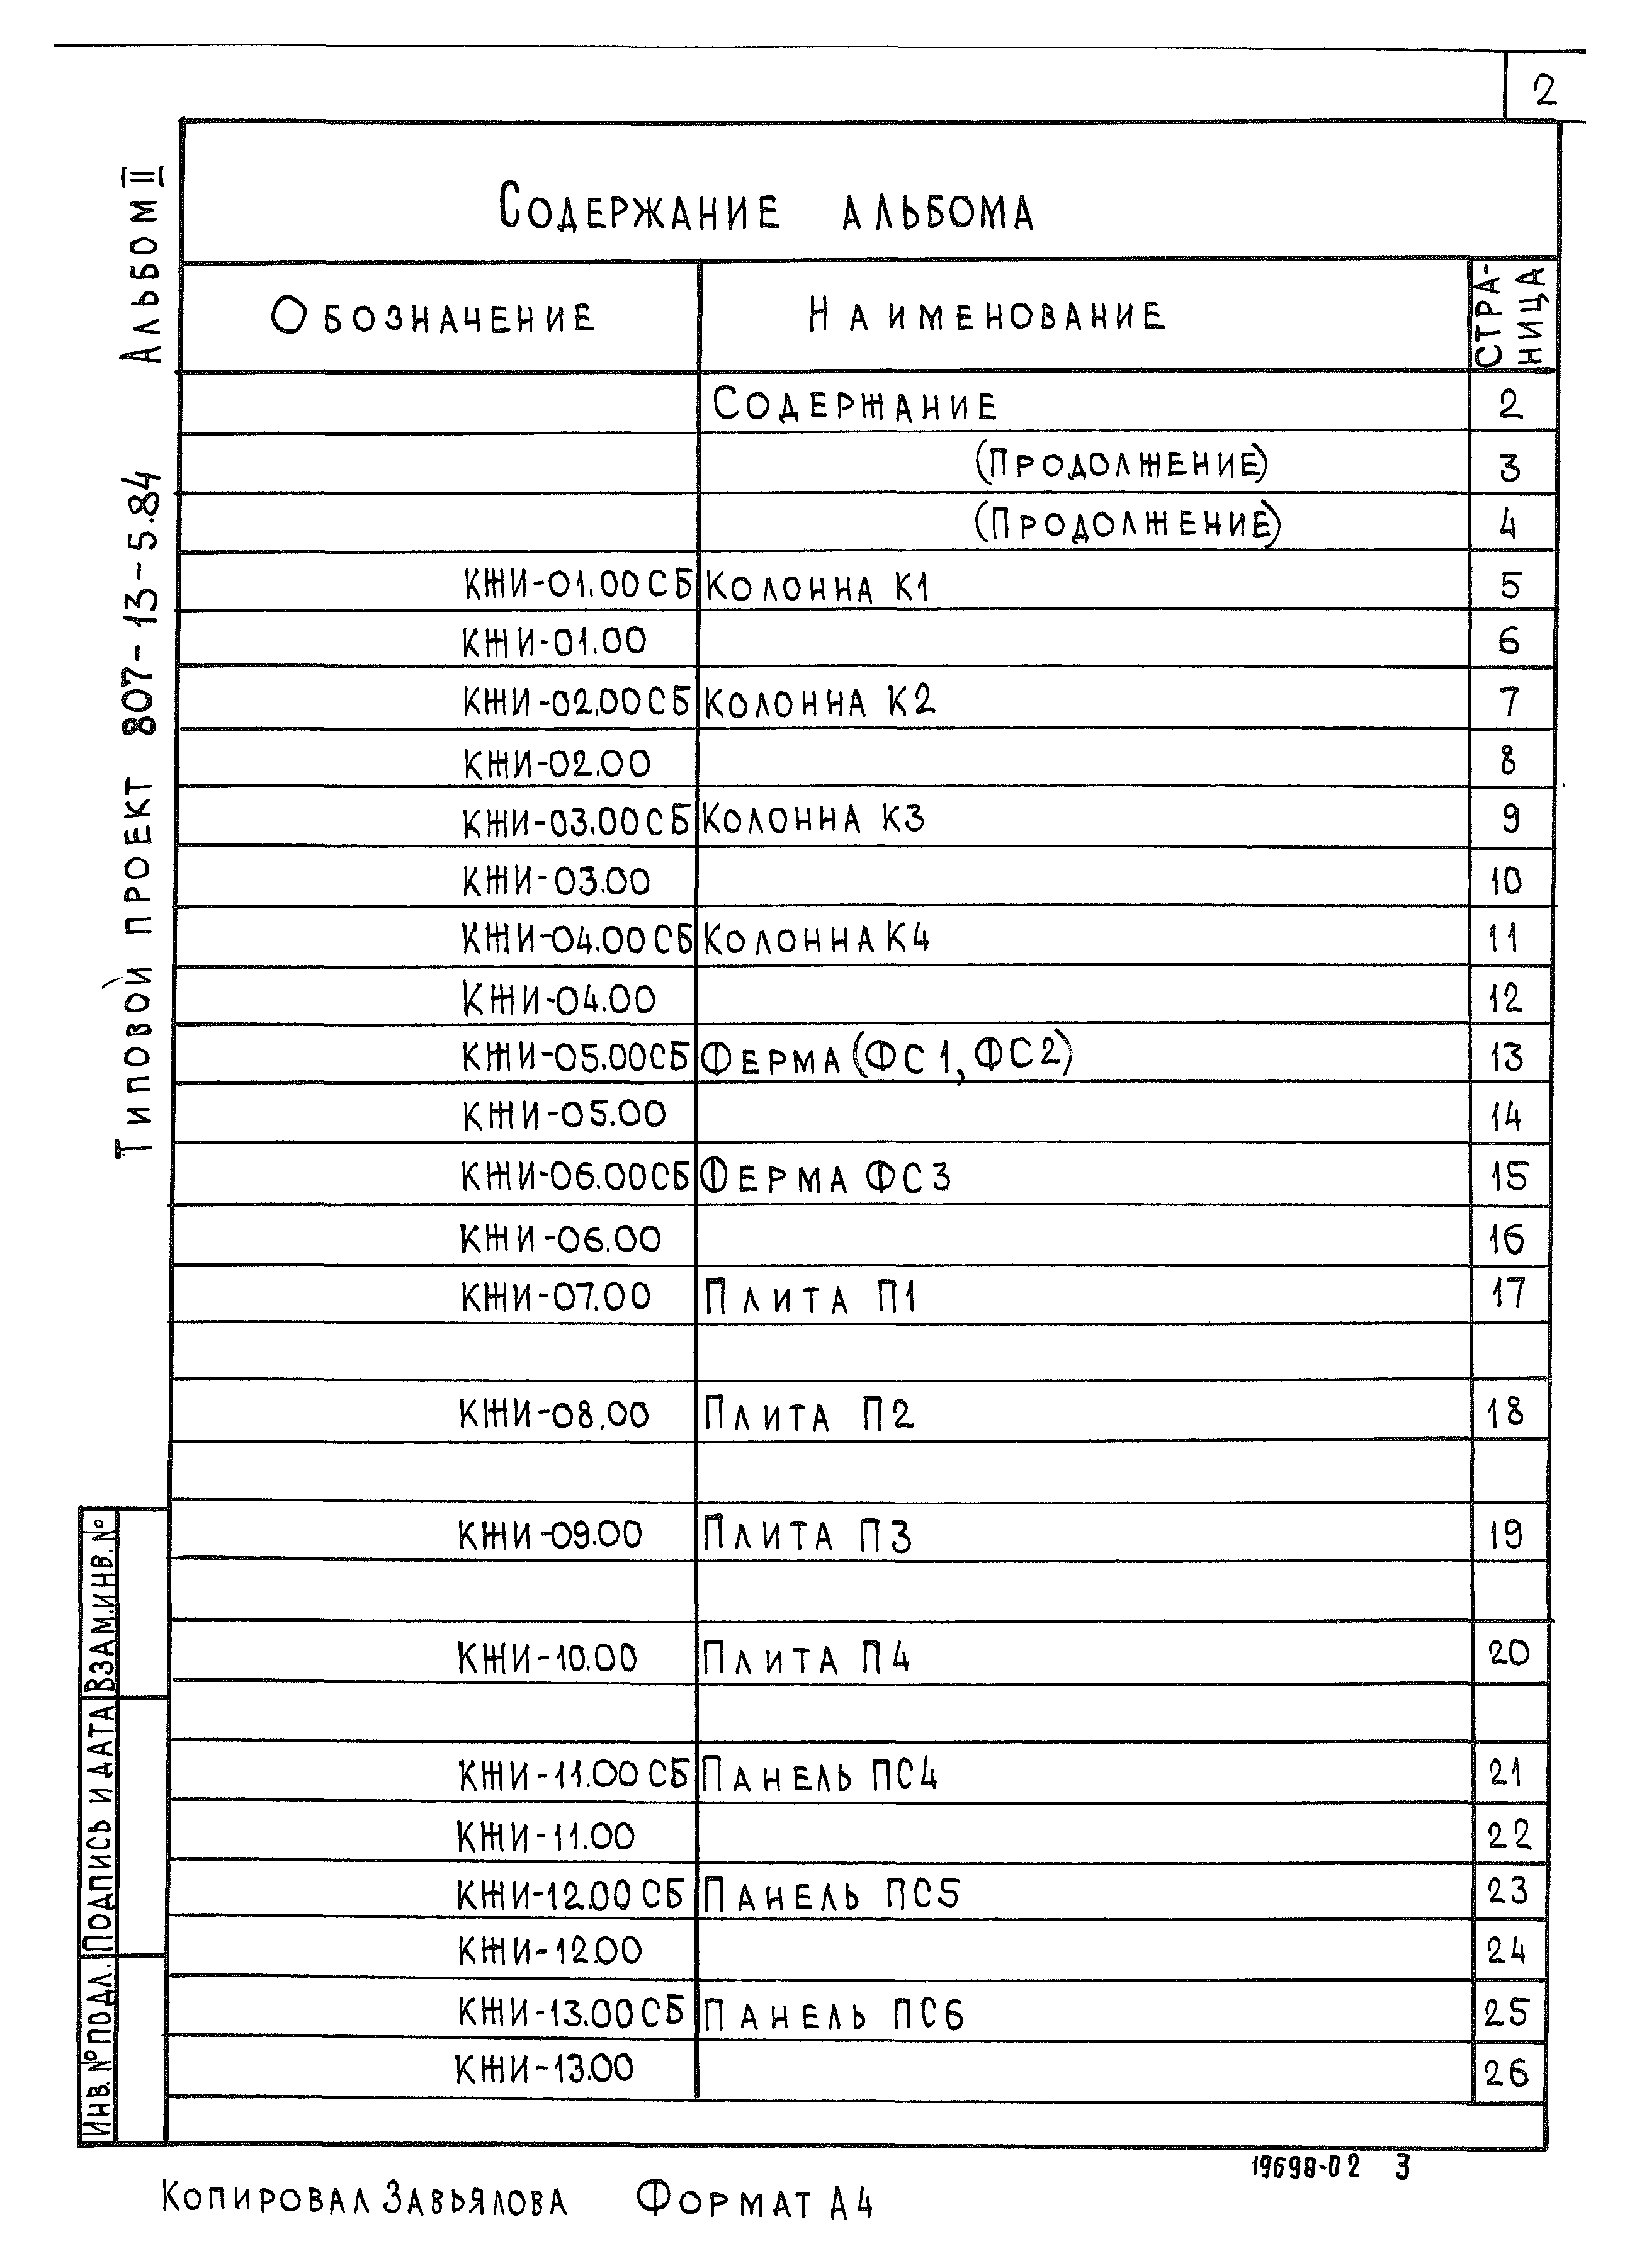 Типовой проект 807-13-5.84